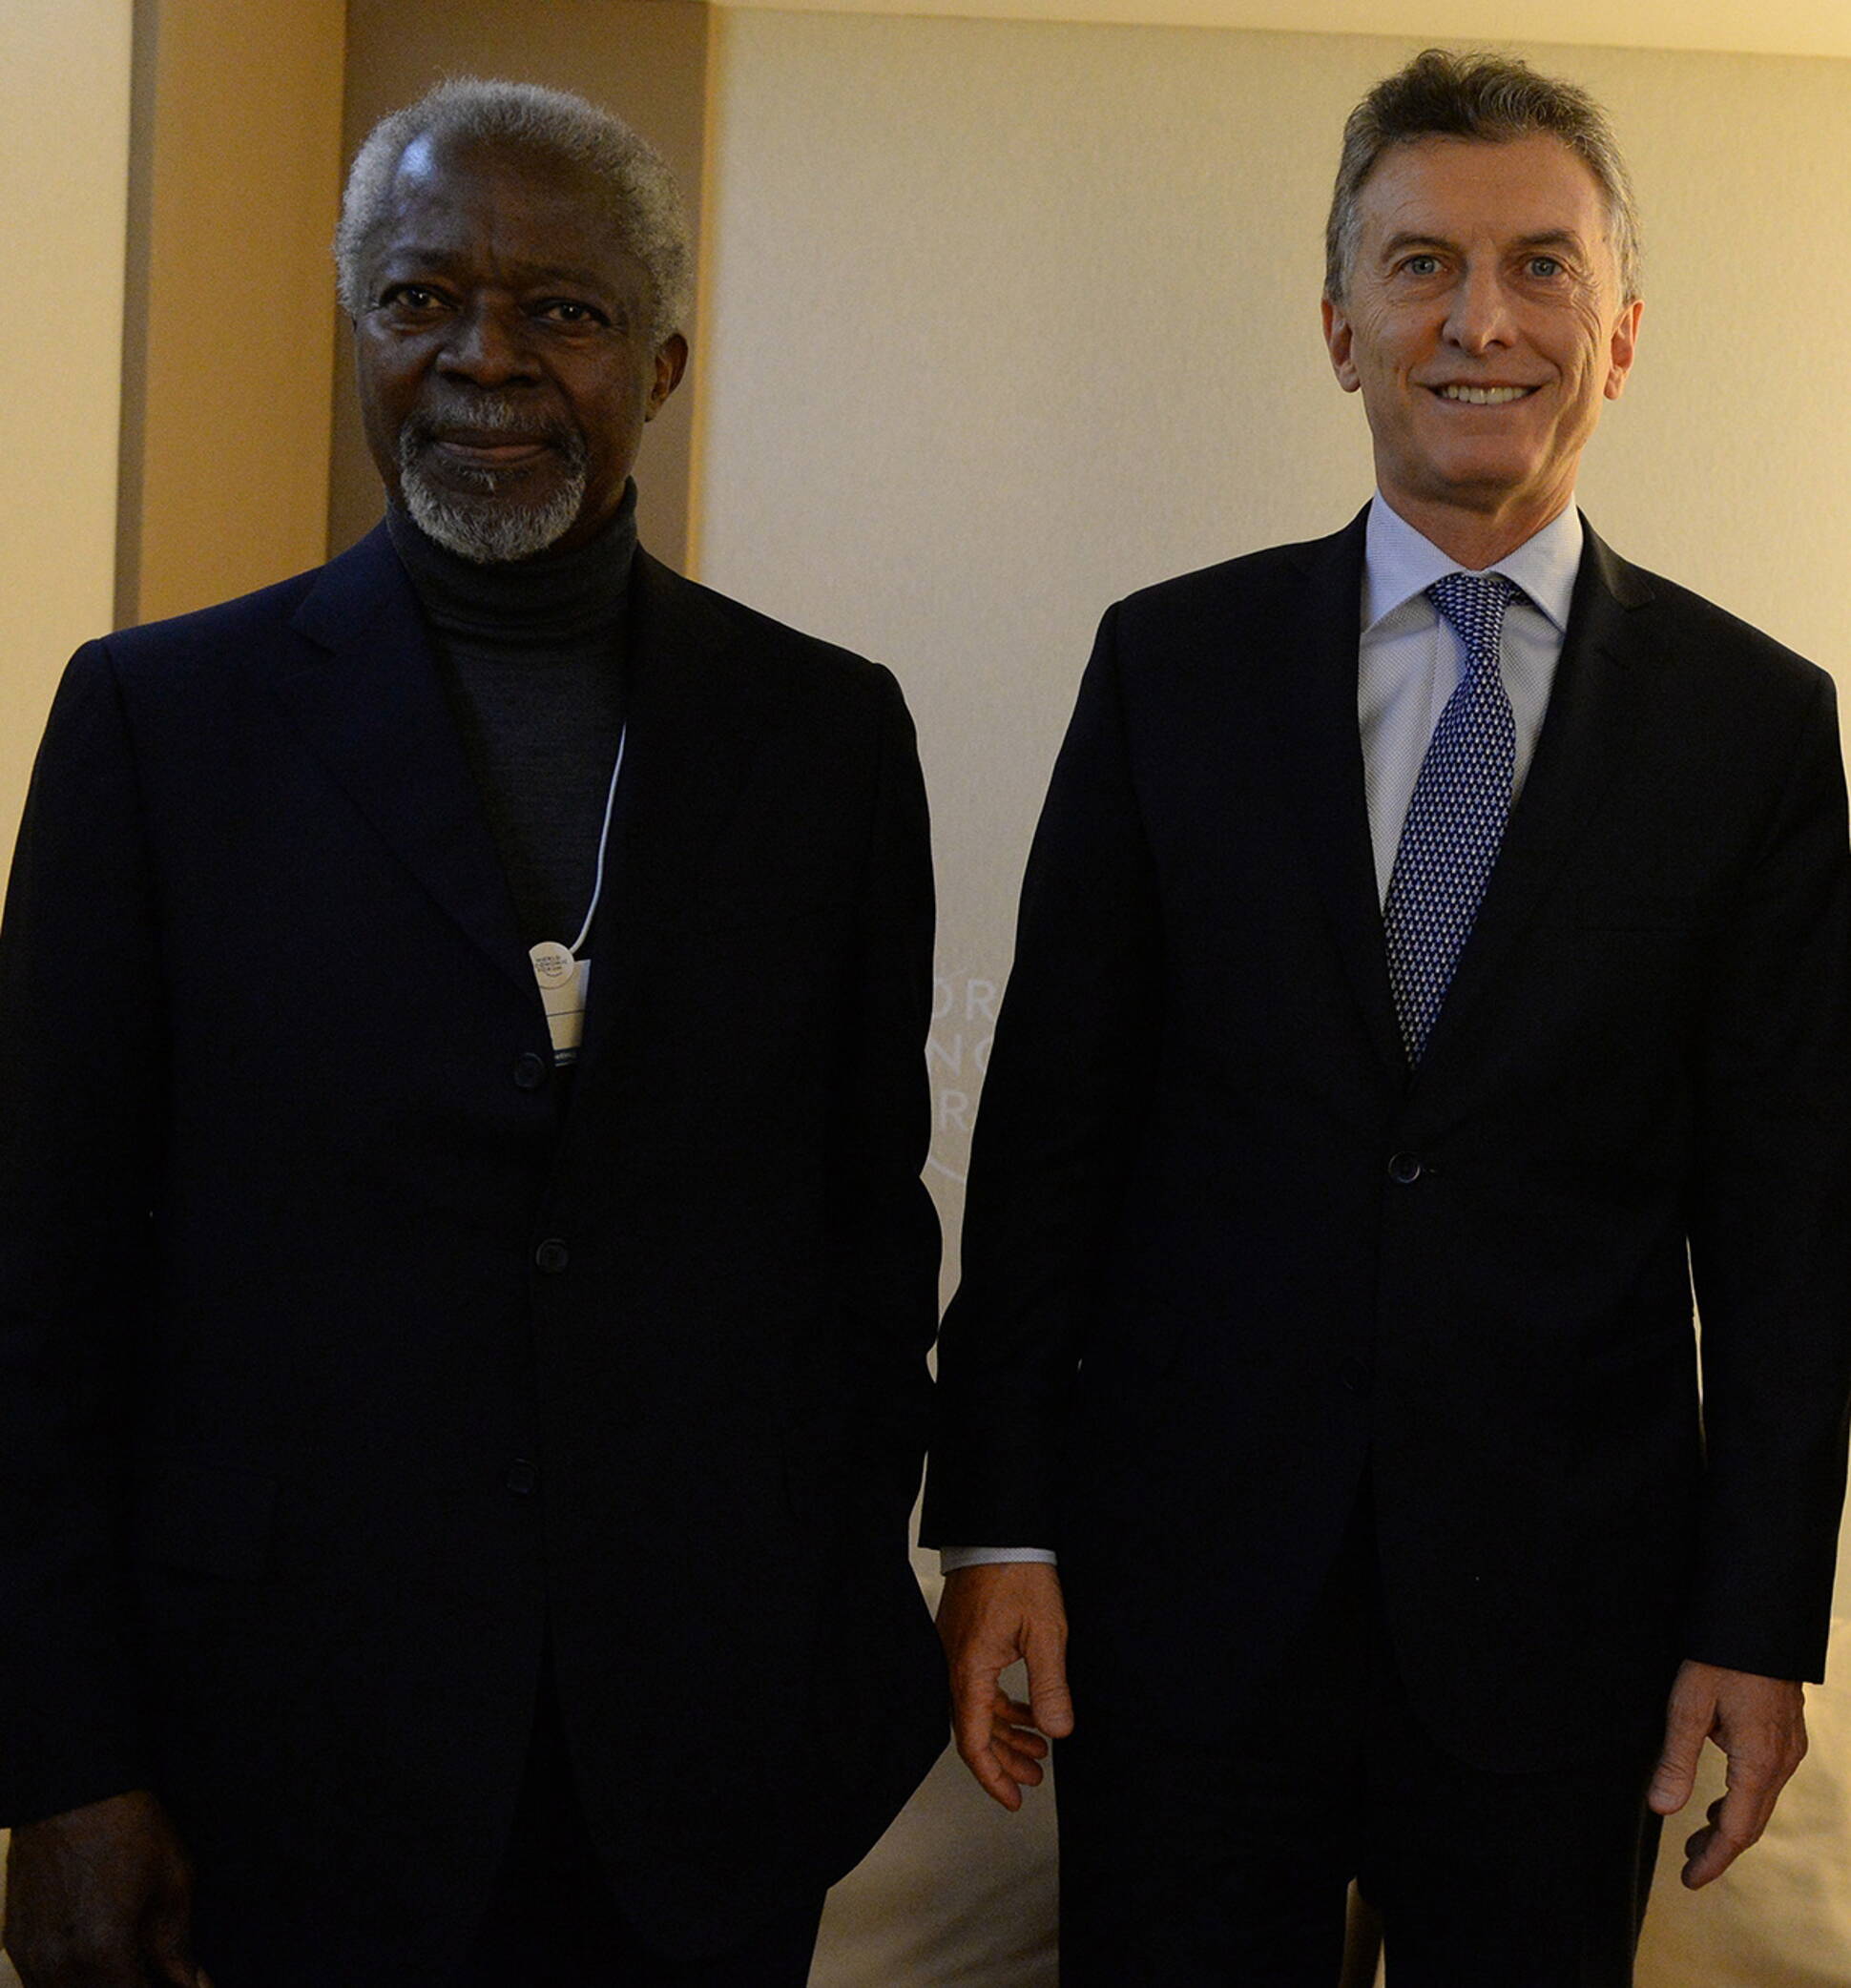 El Presidente compartió uno de los momentos del Foro Económico de Davos con Kofi Annan.